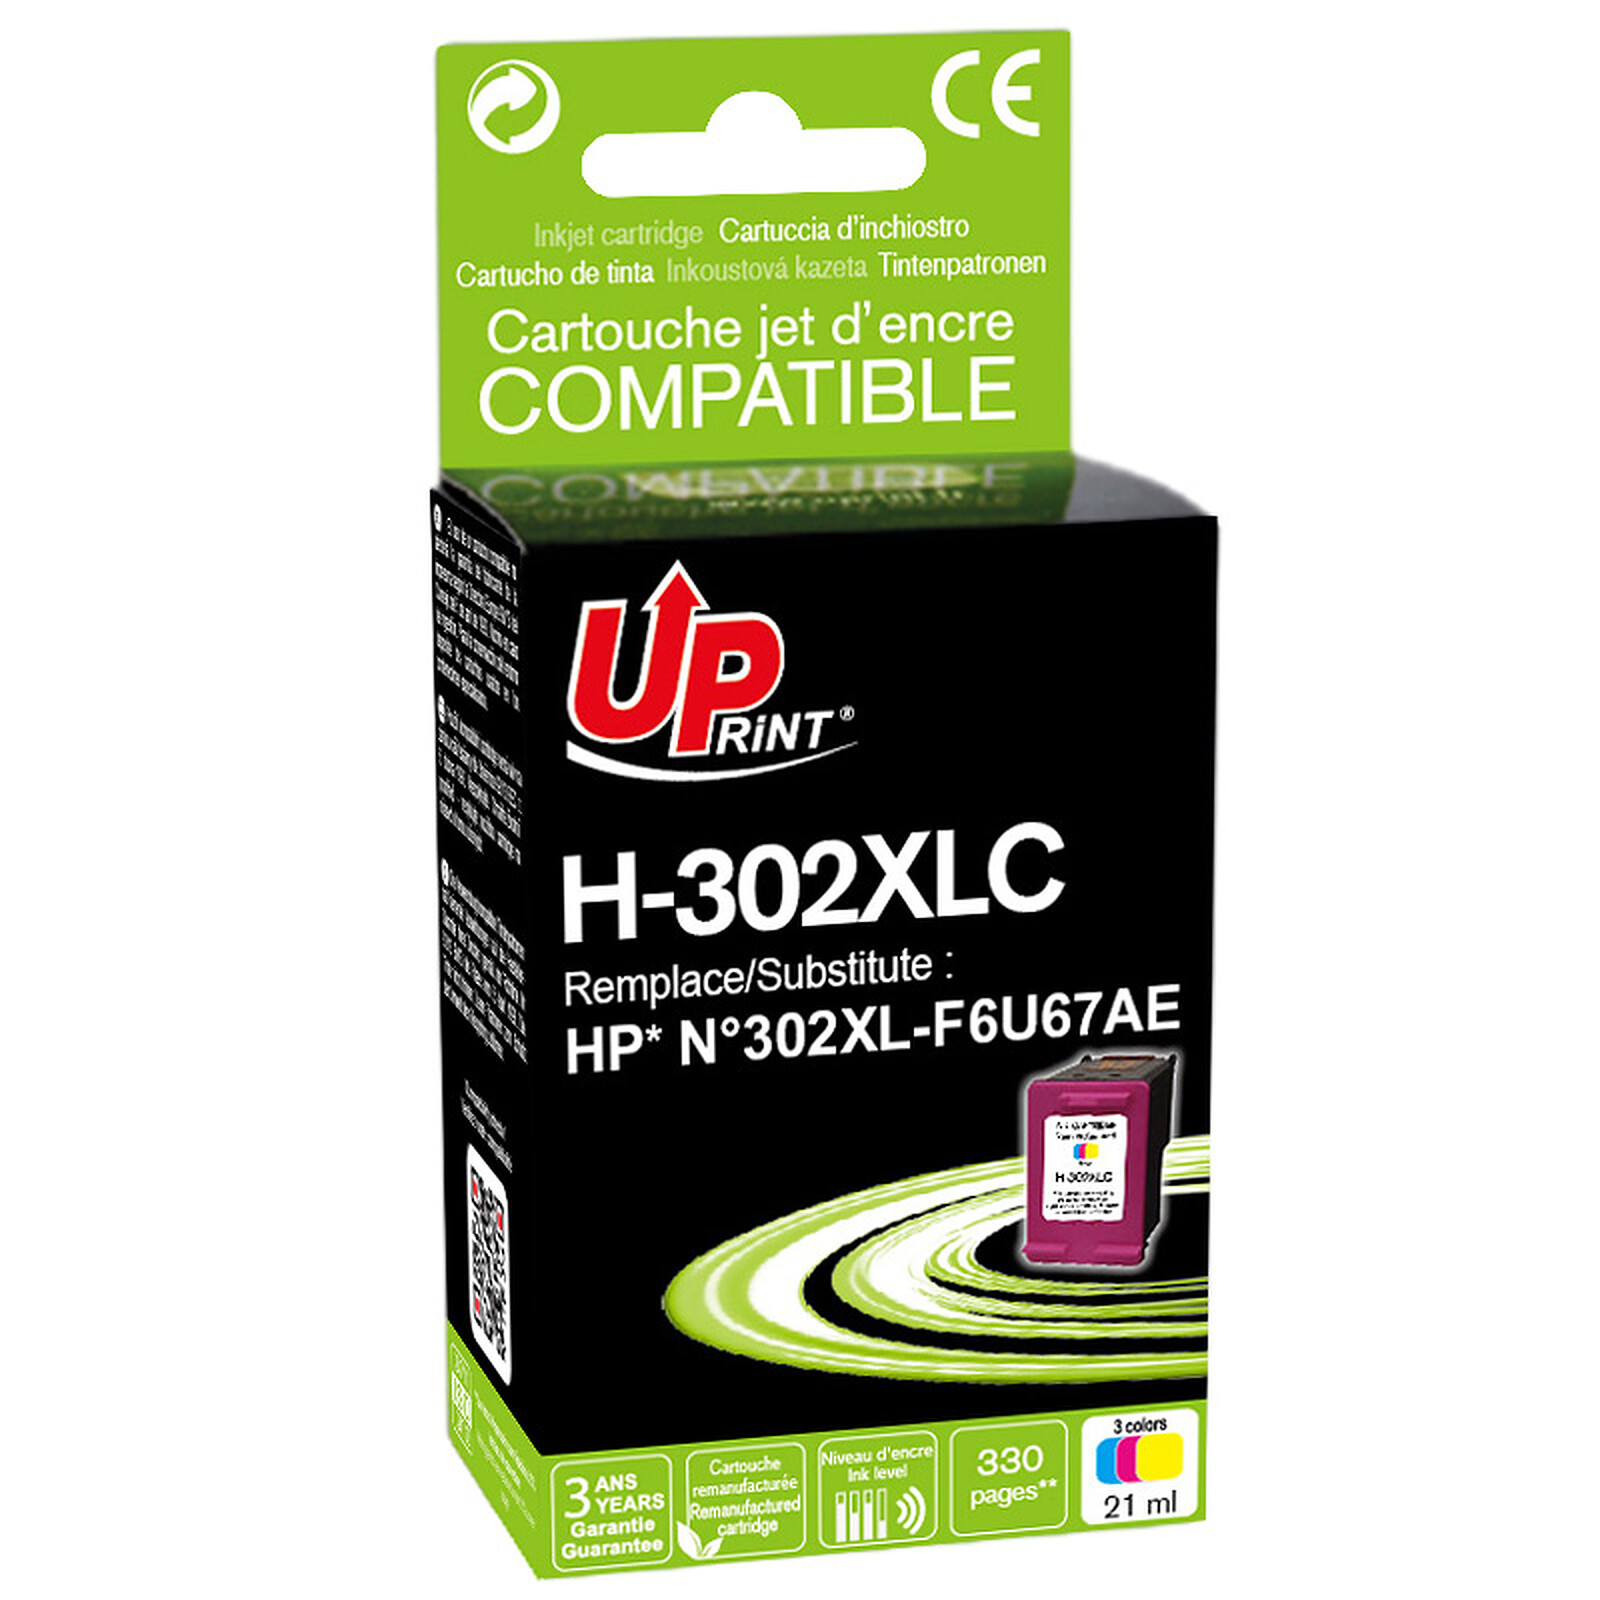 Cartouche compatible HP 963XL - pack de 4 - noir, jaune, cyan, magenta -  UPrint